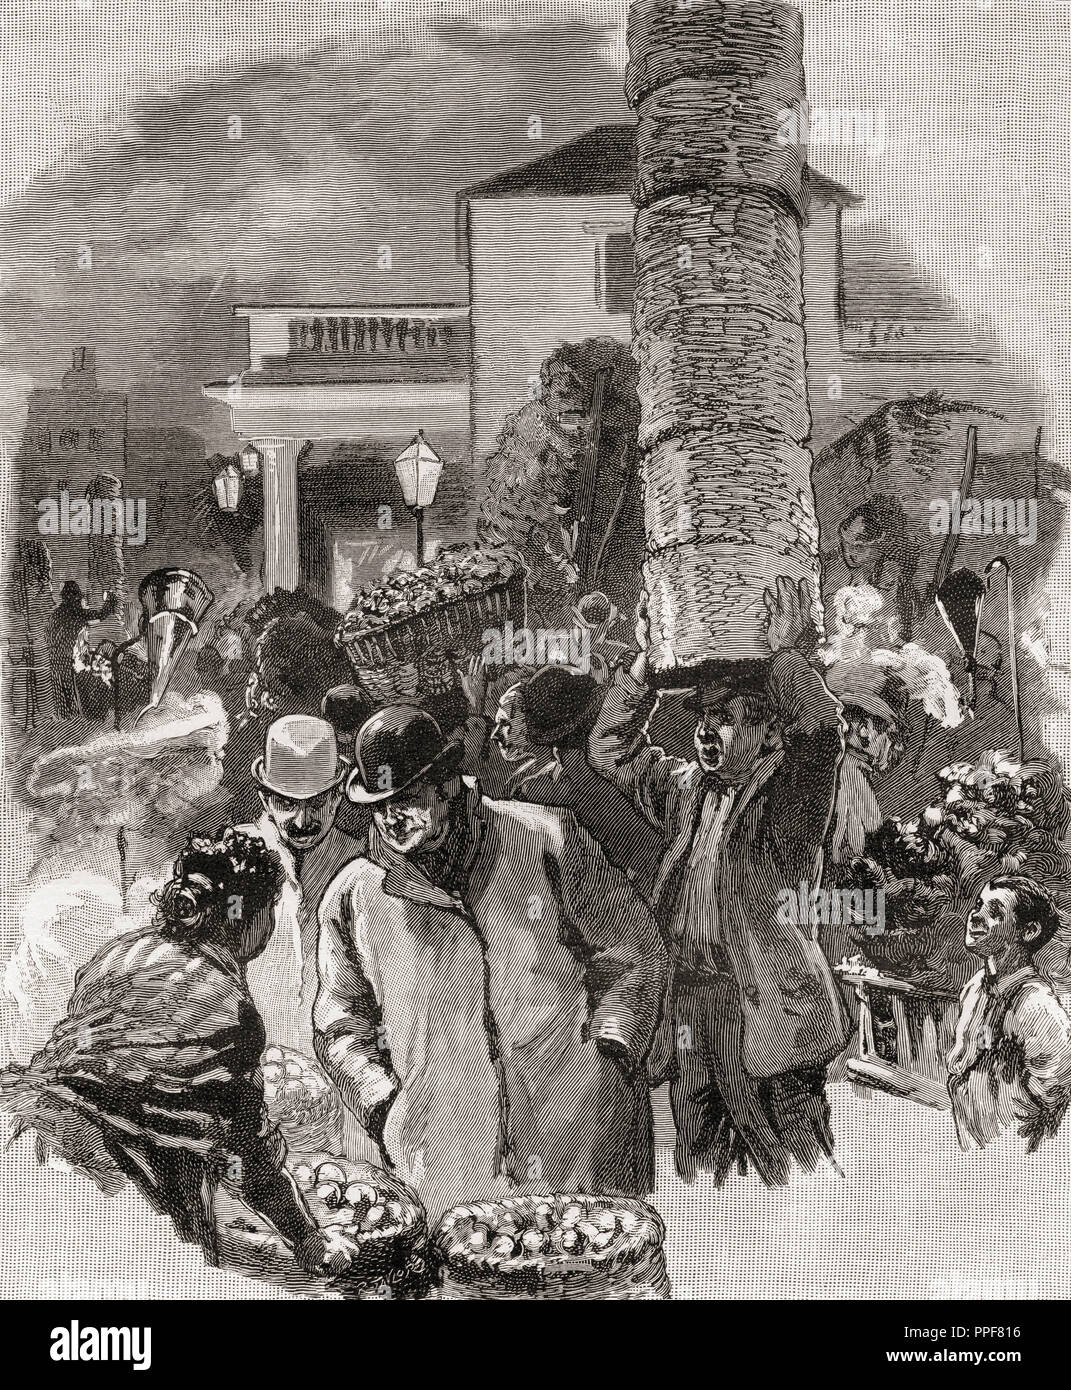 Am frühen Morgen in Covent Garden Markt für Obst und Gemüse, London, England im 19. Jahrhundert. Von London Bilder, veröffentlicht 1890. Stockfoto